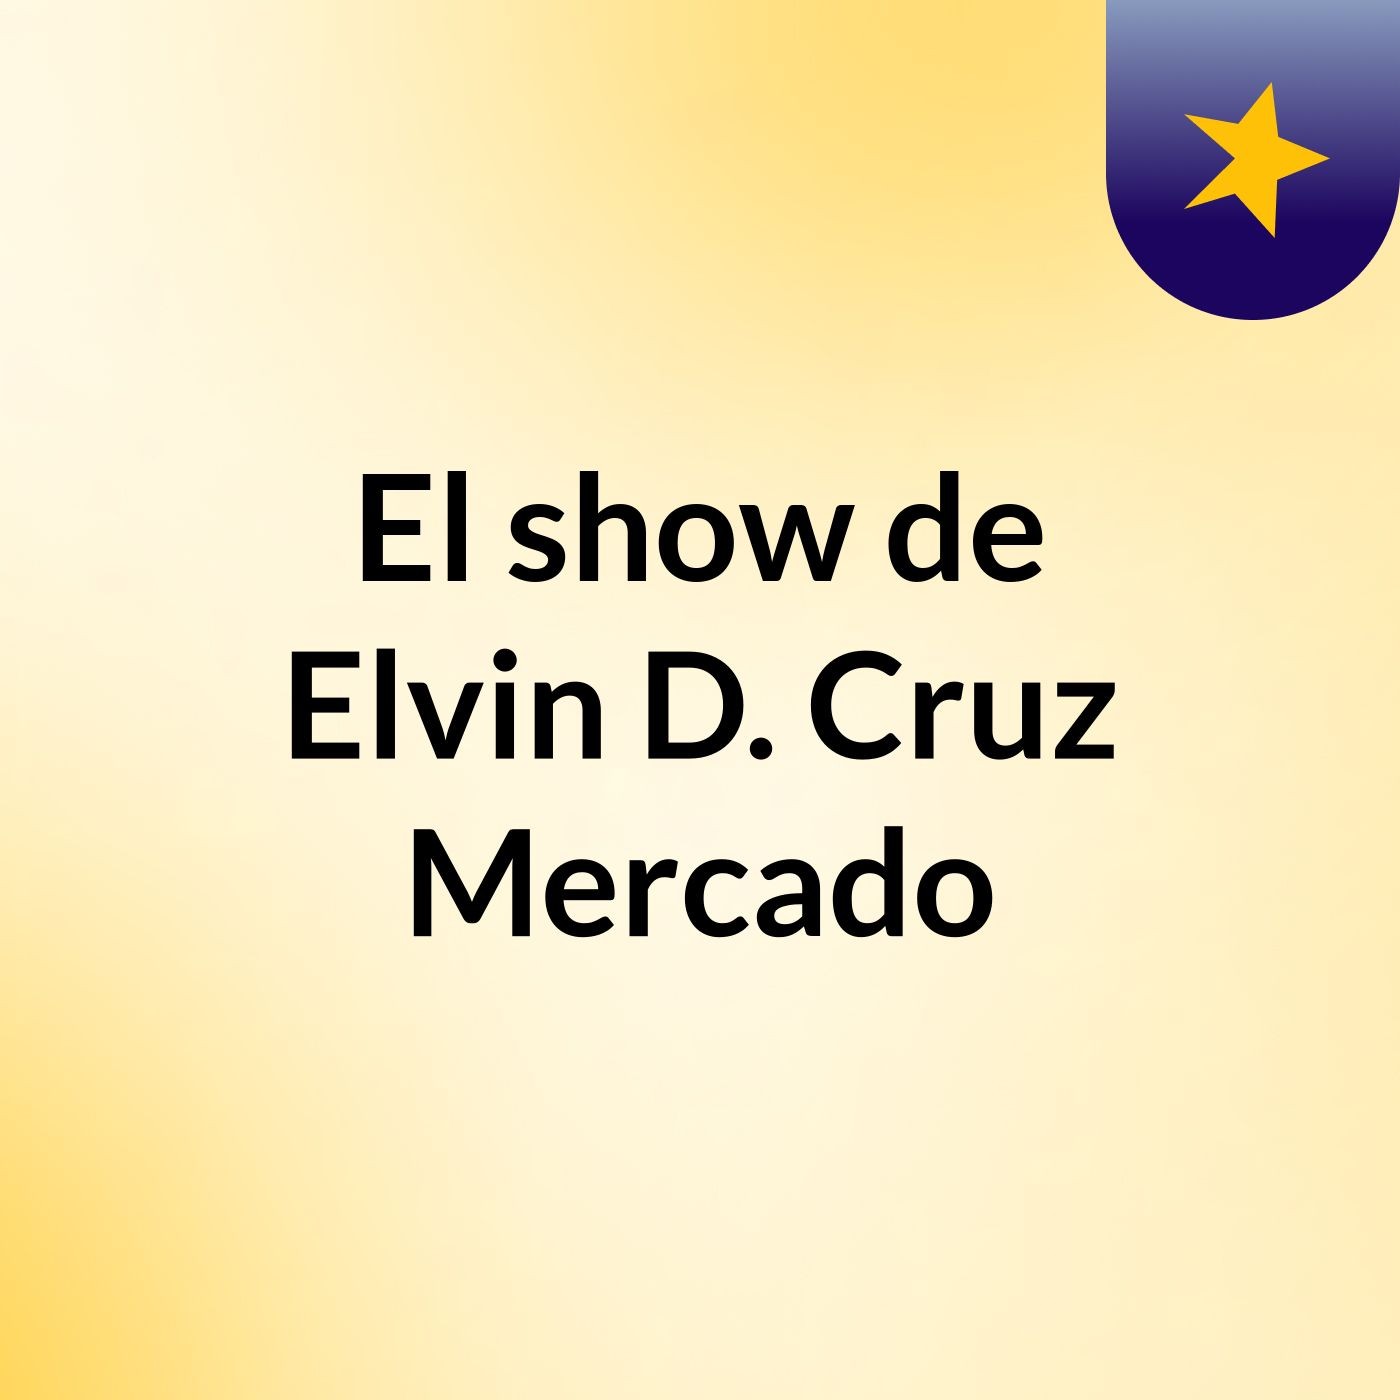 El show de Elvin D. Cruz Mercado